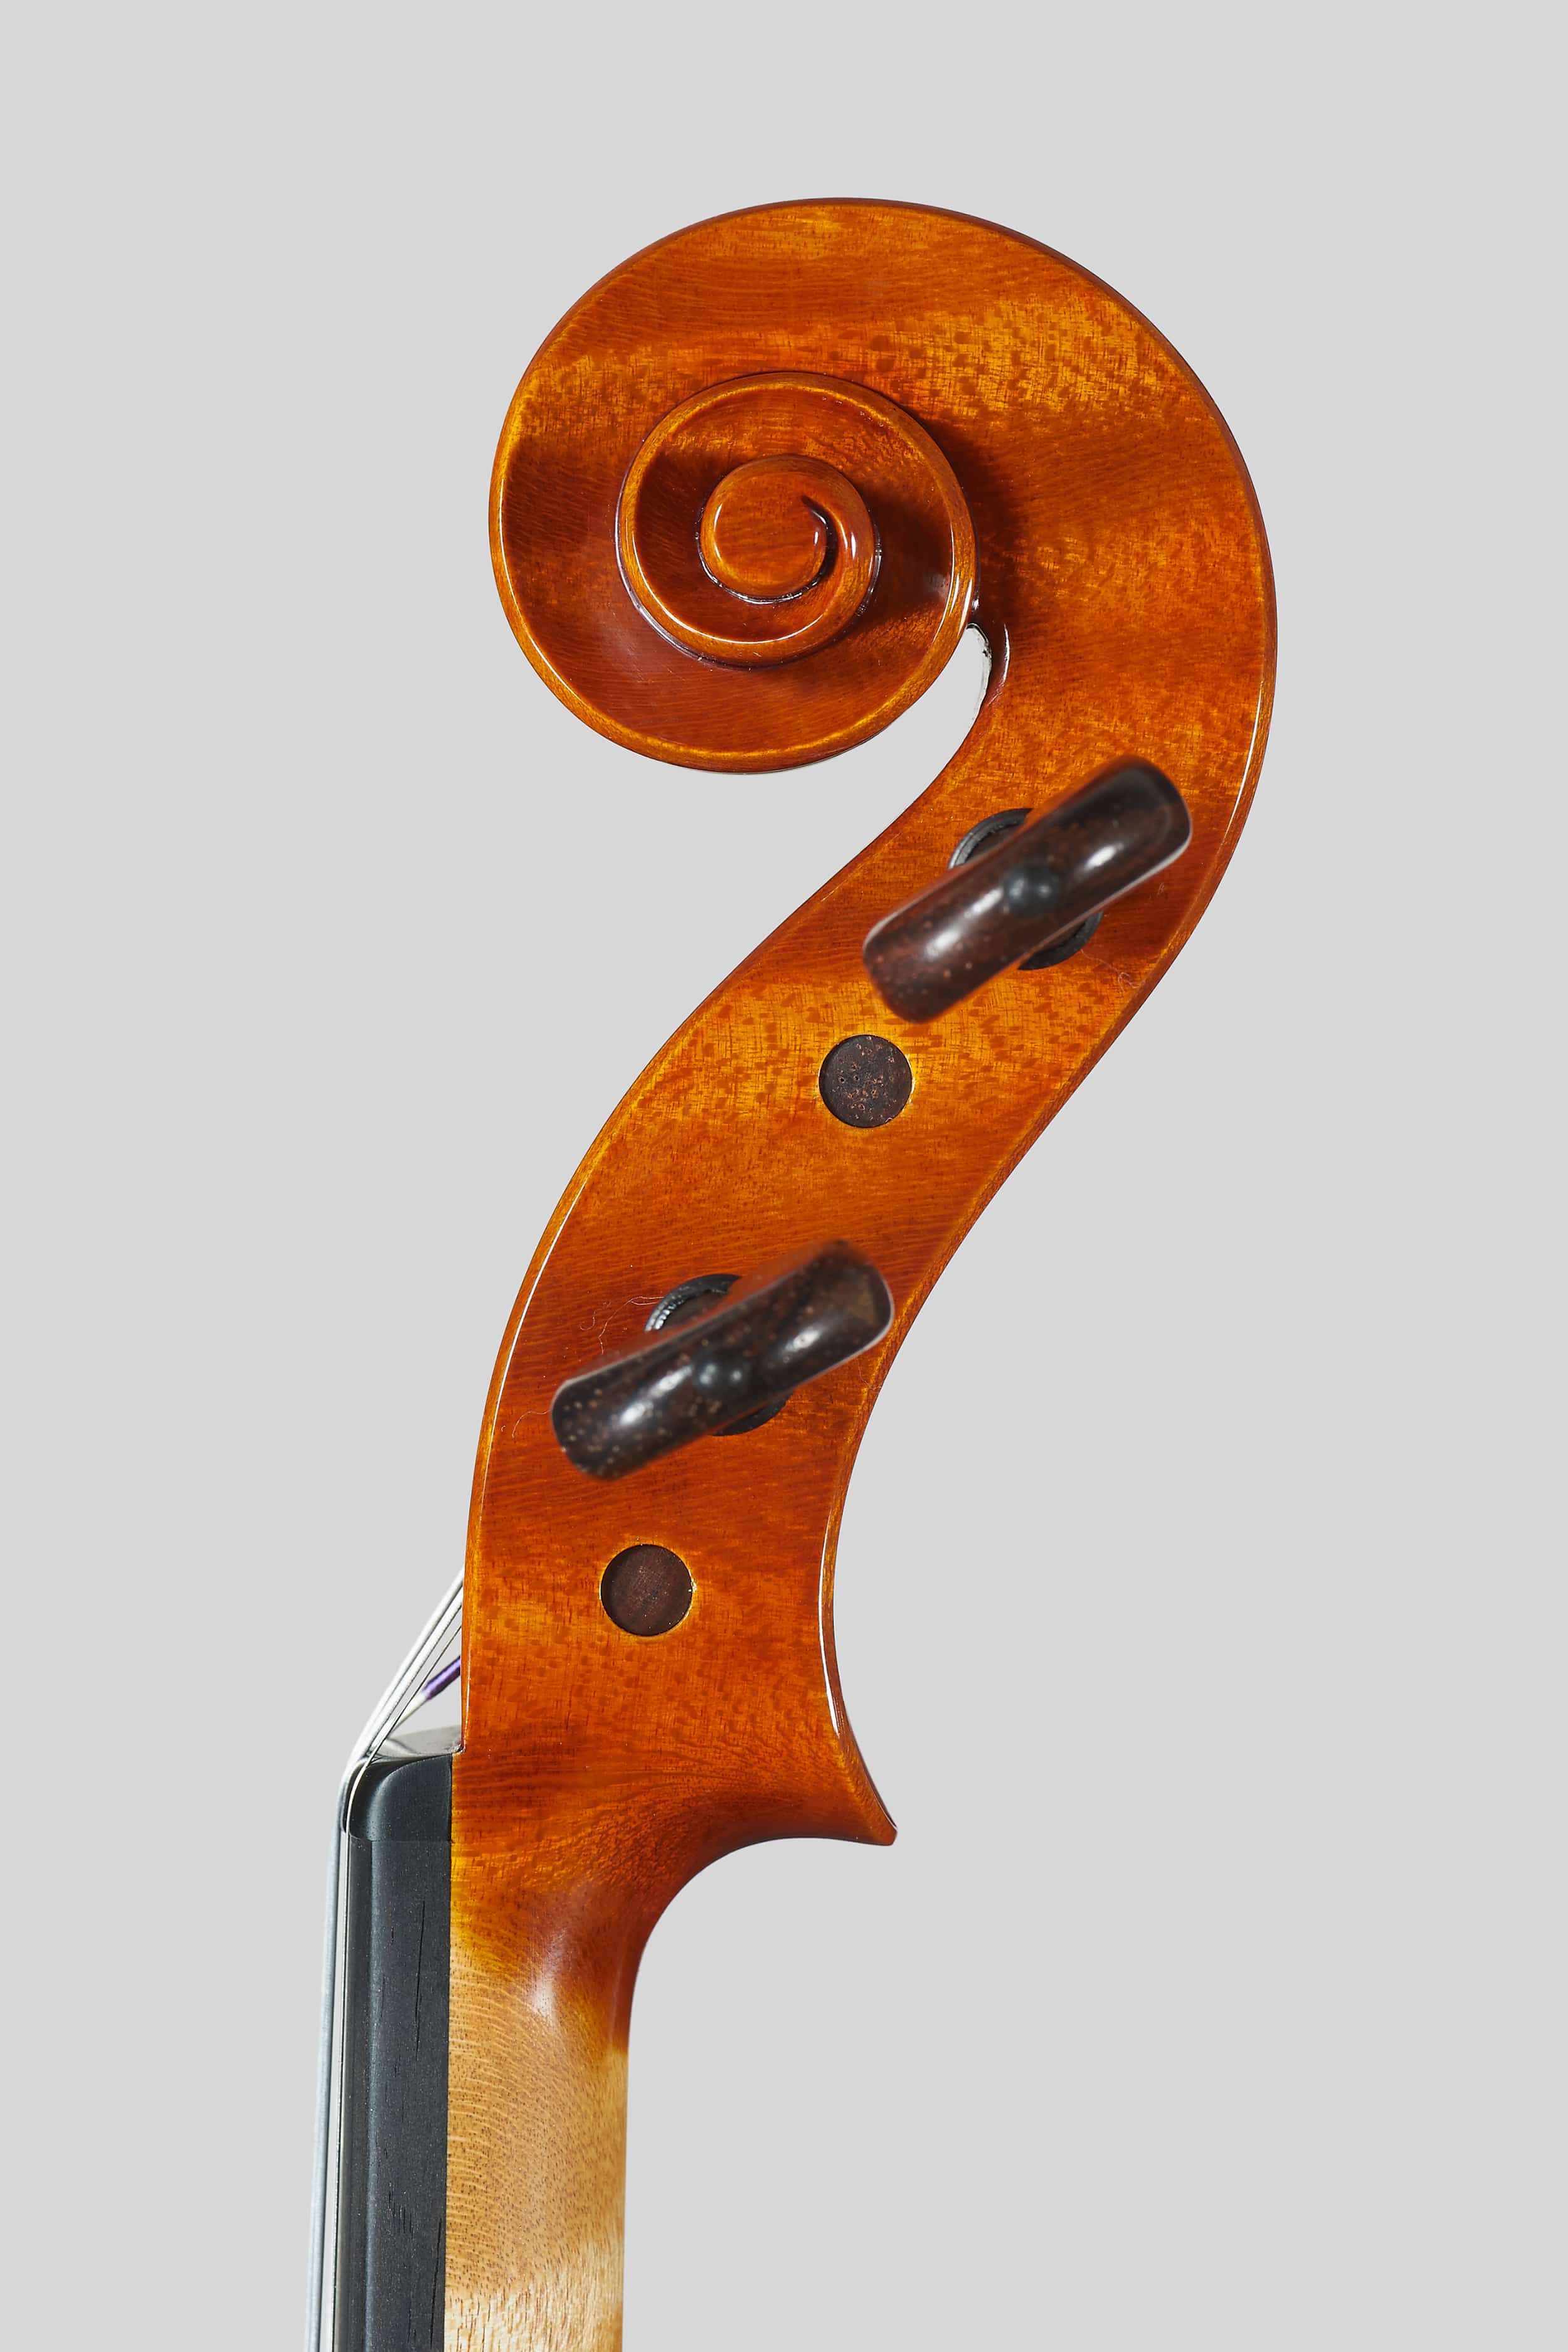 Anno 2016 – Violino modello A. Stradivari “Soil” 1714 - Testa Destra